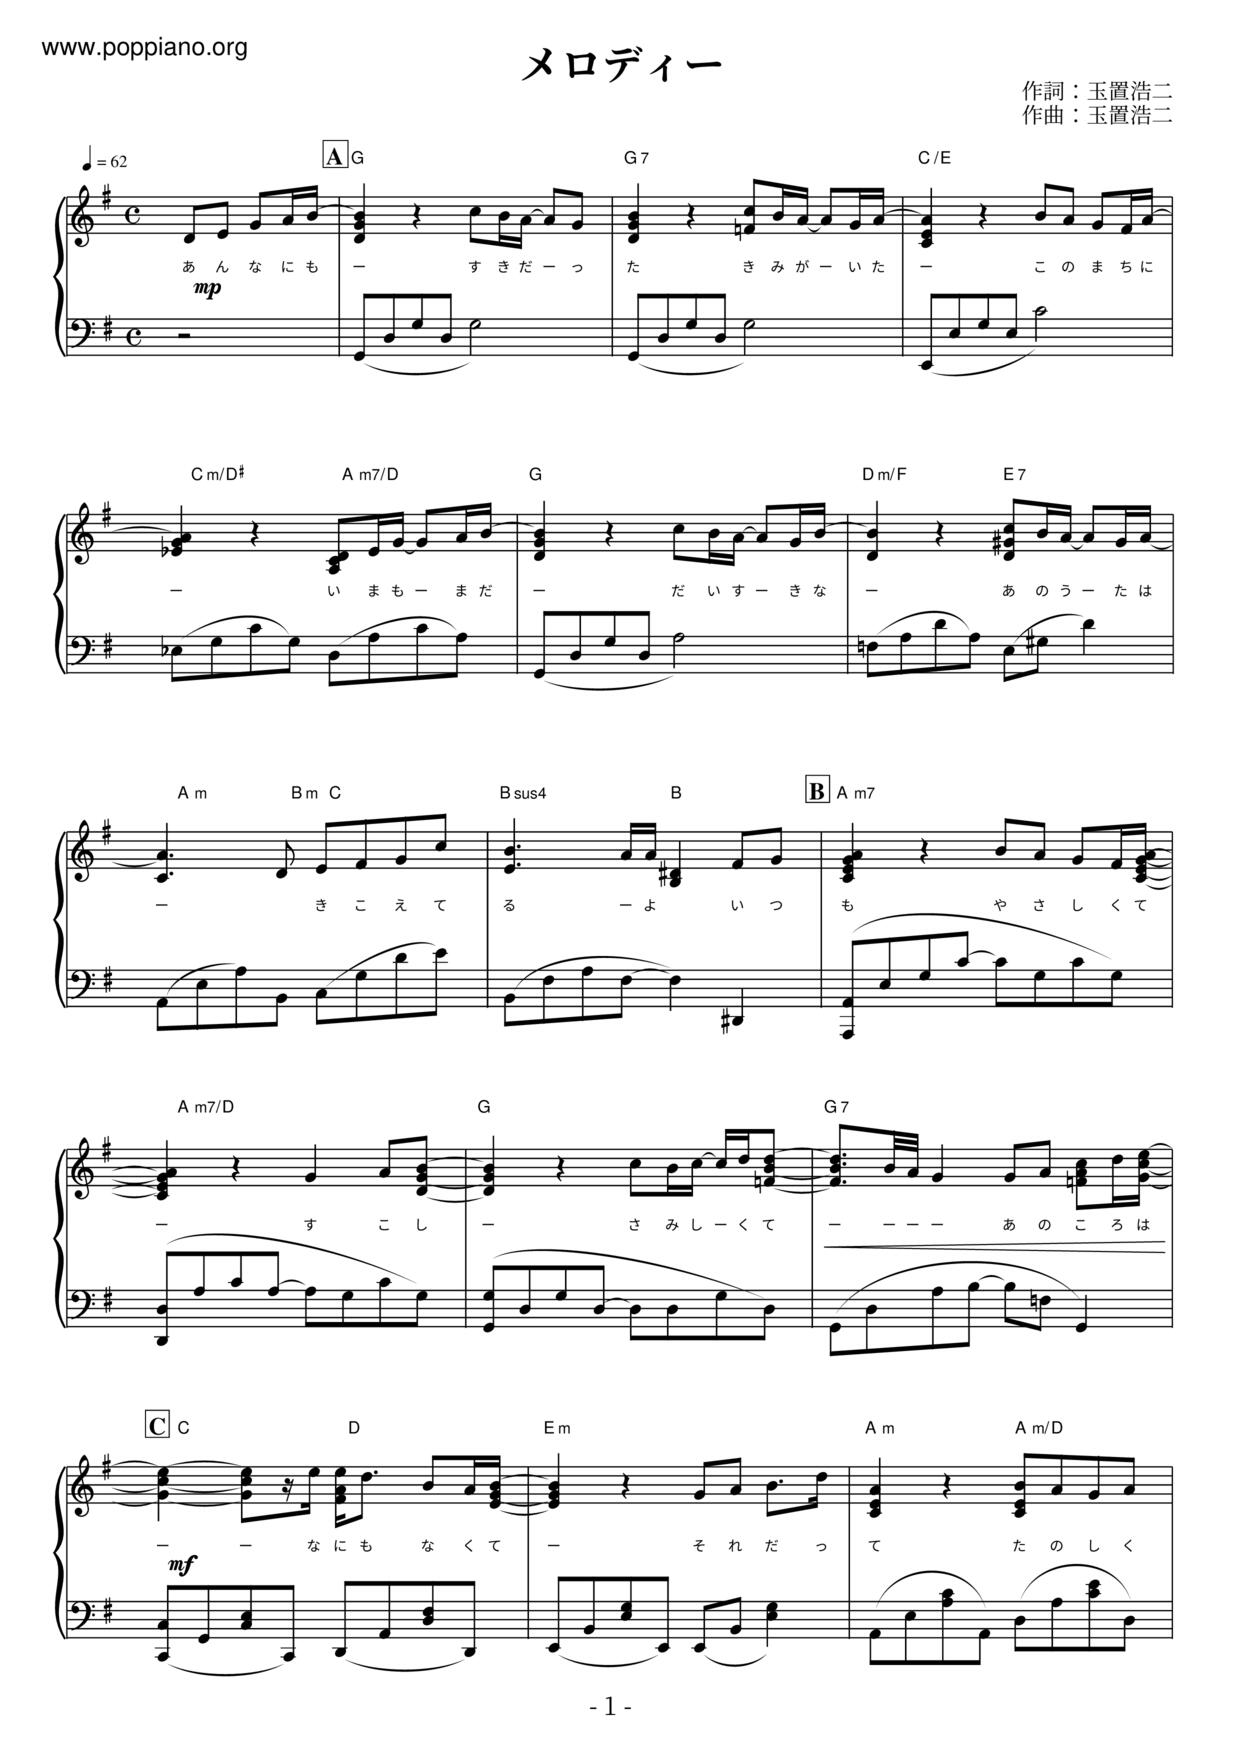 Melody Score